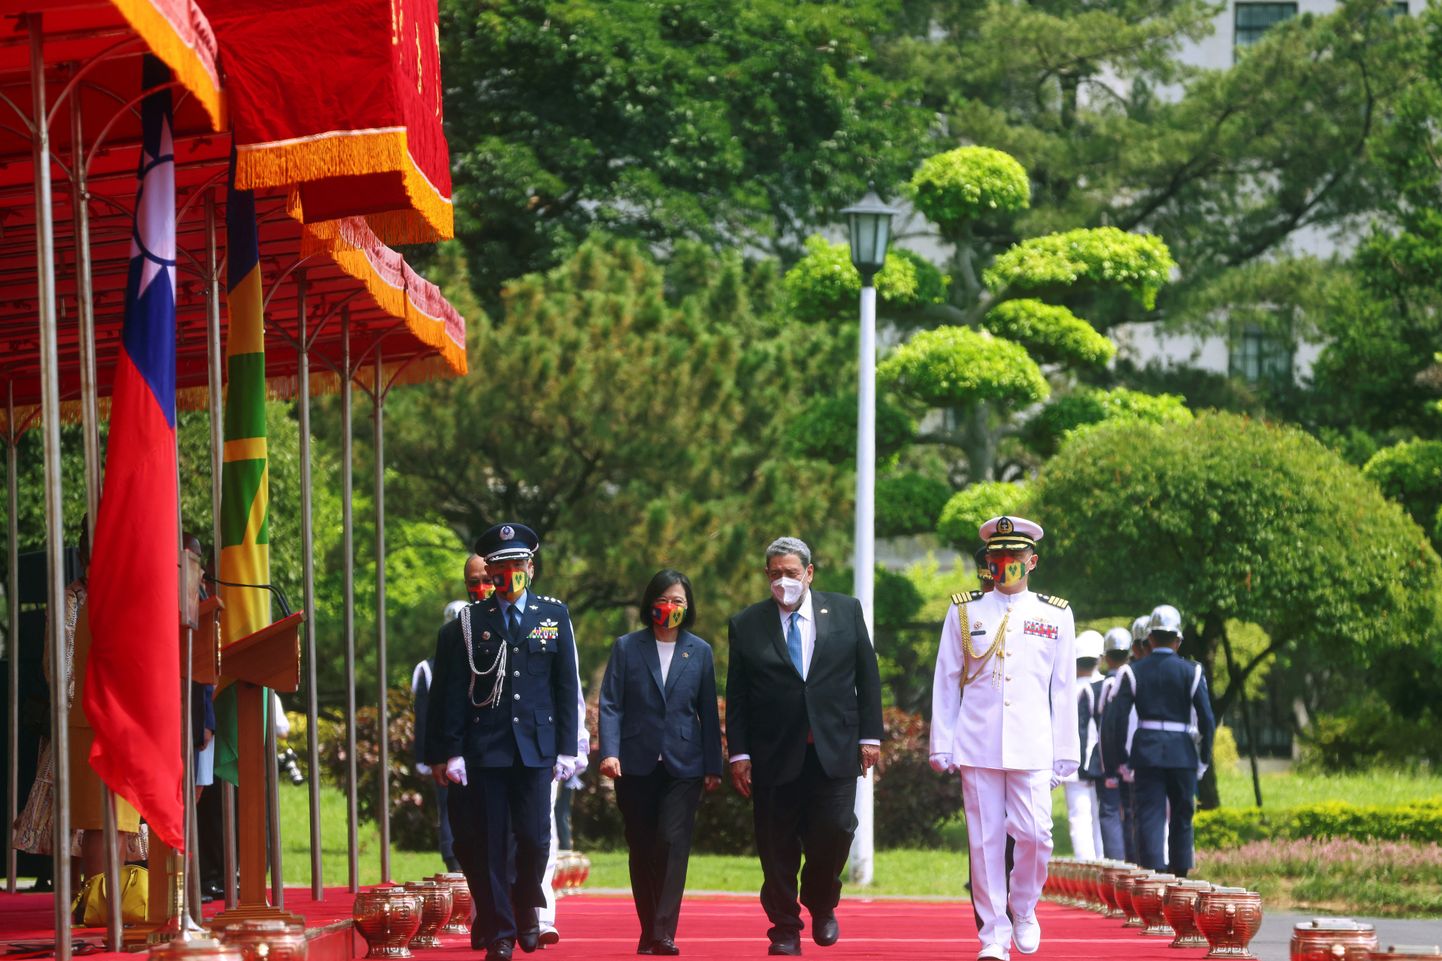 Vaatamata uutele Hiina sõjaväelistele õppustele alustas Taiwan töönädalat tavapärases diplomaatilises rütmis, kui president Tsai Ing-wen võõrustas esmaspäeval Taipeis presidendipalees Saint Vincent ja Grenadiinide peaministrit Ralph Gonsalvest.